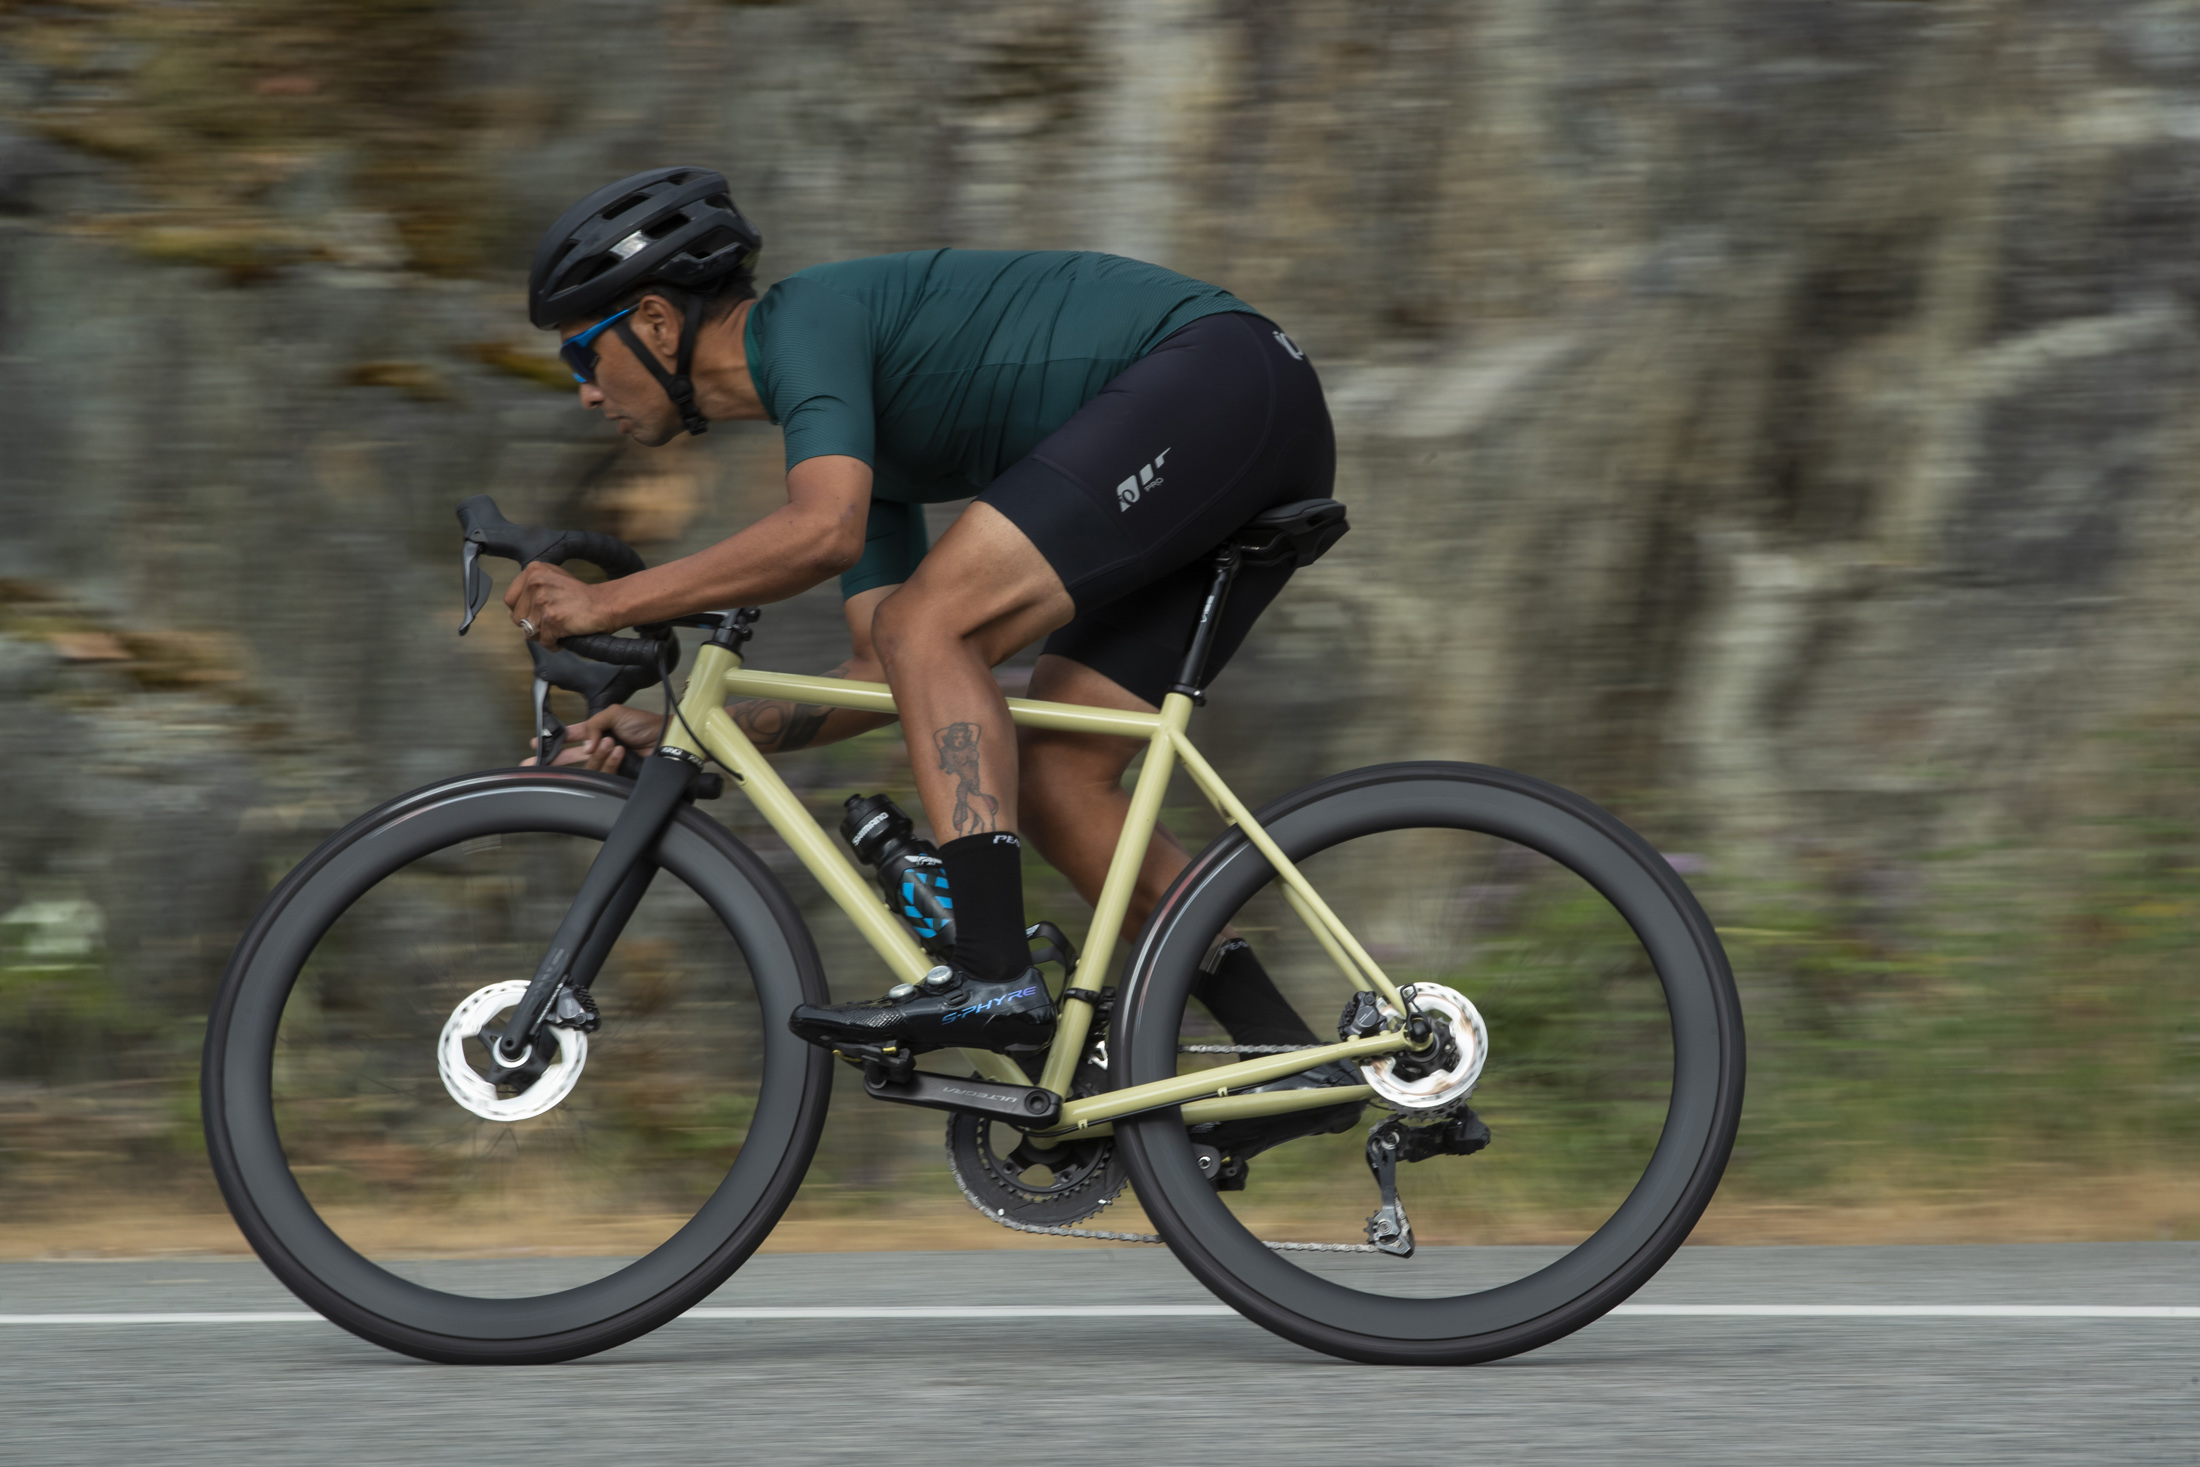 conducción de una bicicleta de carretera con ruedas de carbono Shimano